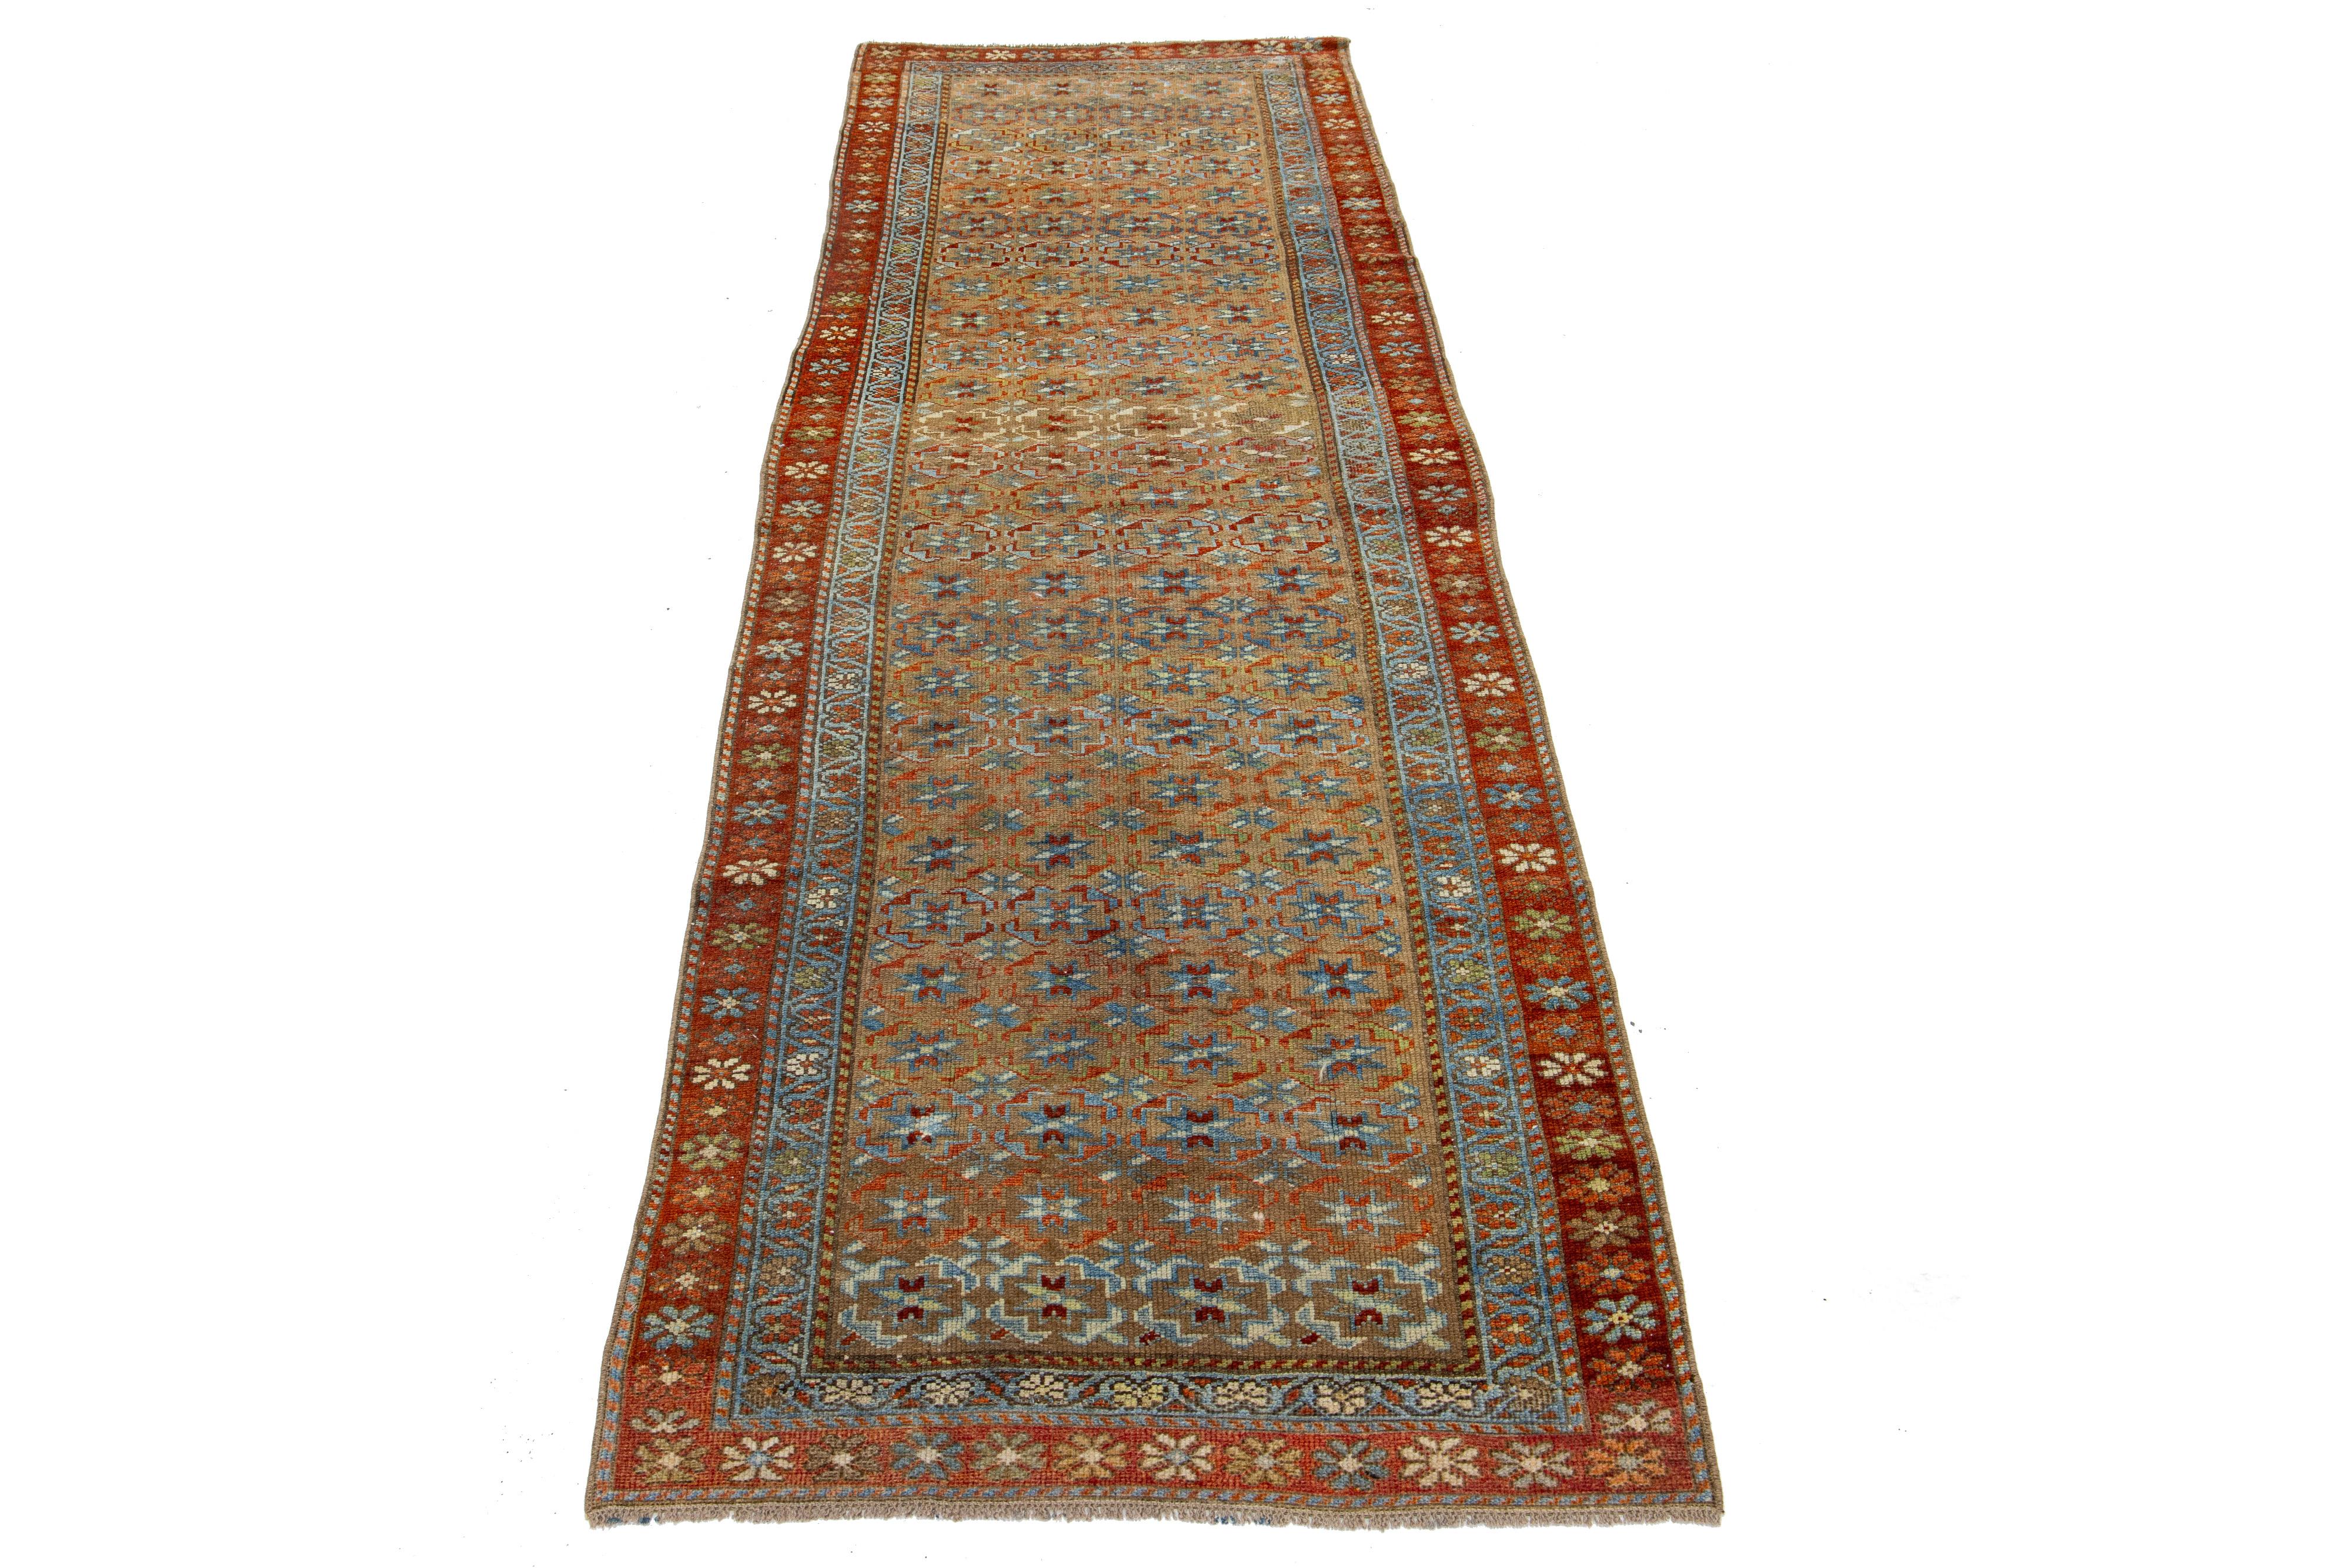 Schöner antiker, handgeknüpfter Bidjar-Woll-Läufer mit braunem Farbfeld. Dieser Bidjar-Teppich hat einen gestalteten Rahmen mit beigen, rostfarbenen und blauen Akzenten in einem wunderschönen Allover-Muster.

Dieser Teppich misst 2'11